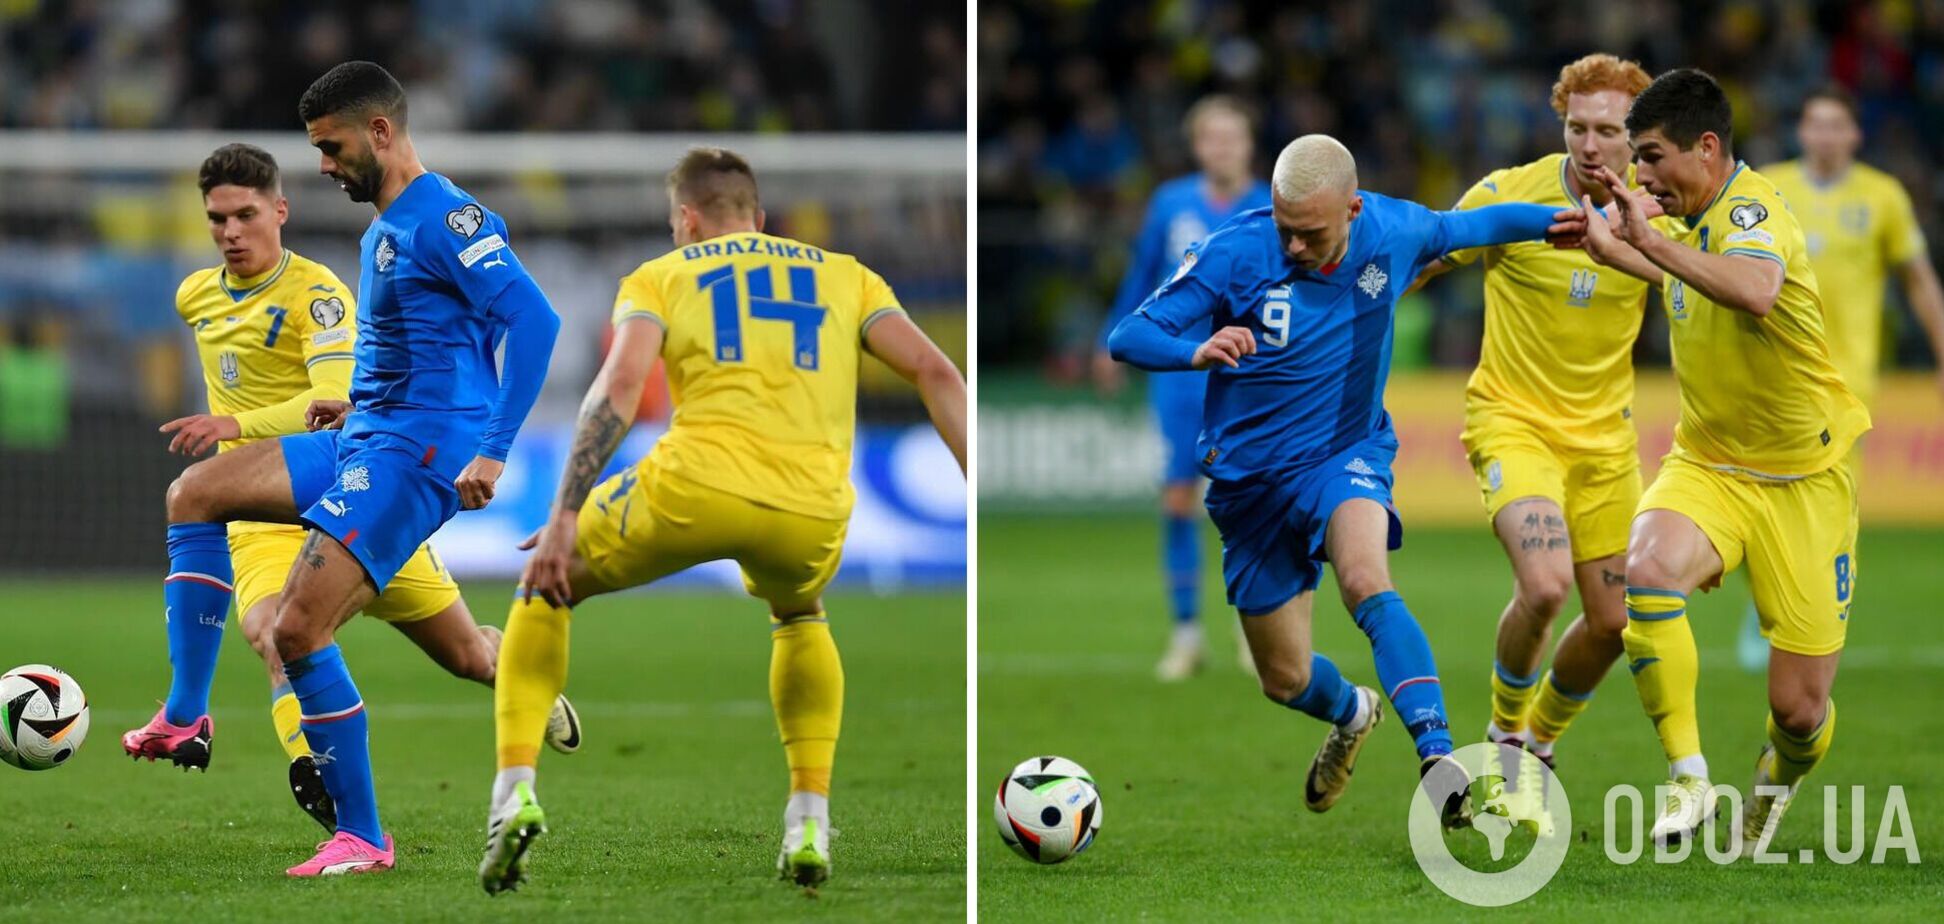 'Вбив гру': футболіст збірної Ісландії емоційно відреагував на поразку від України